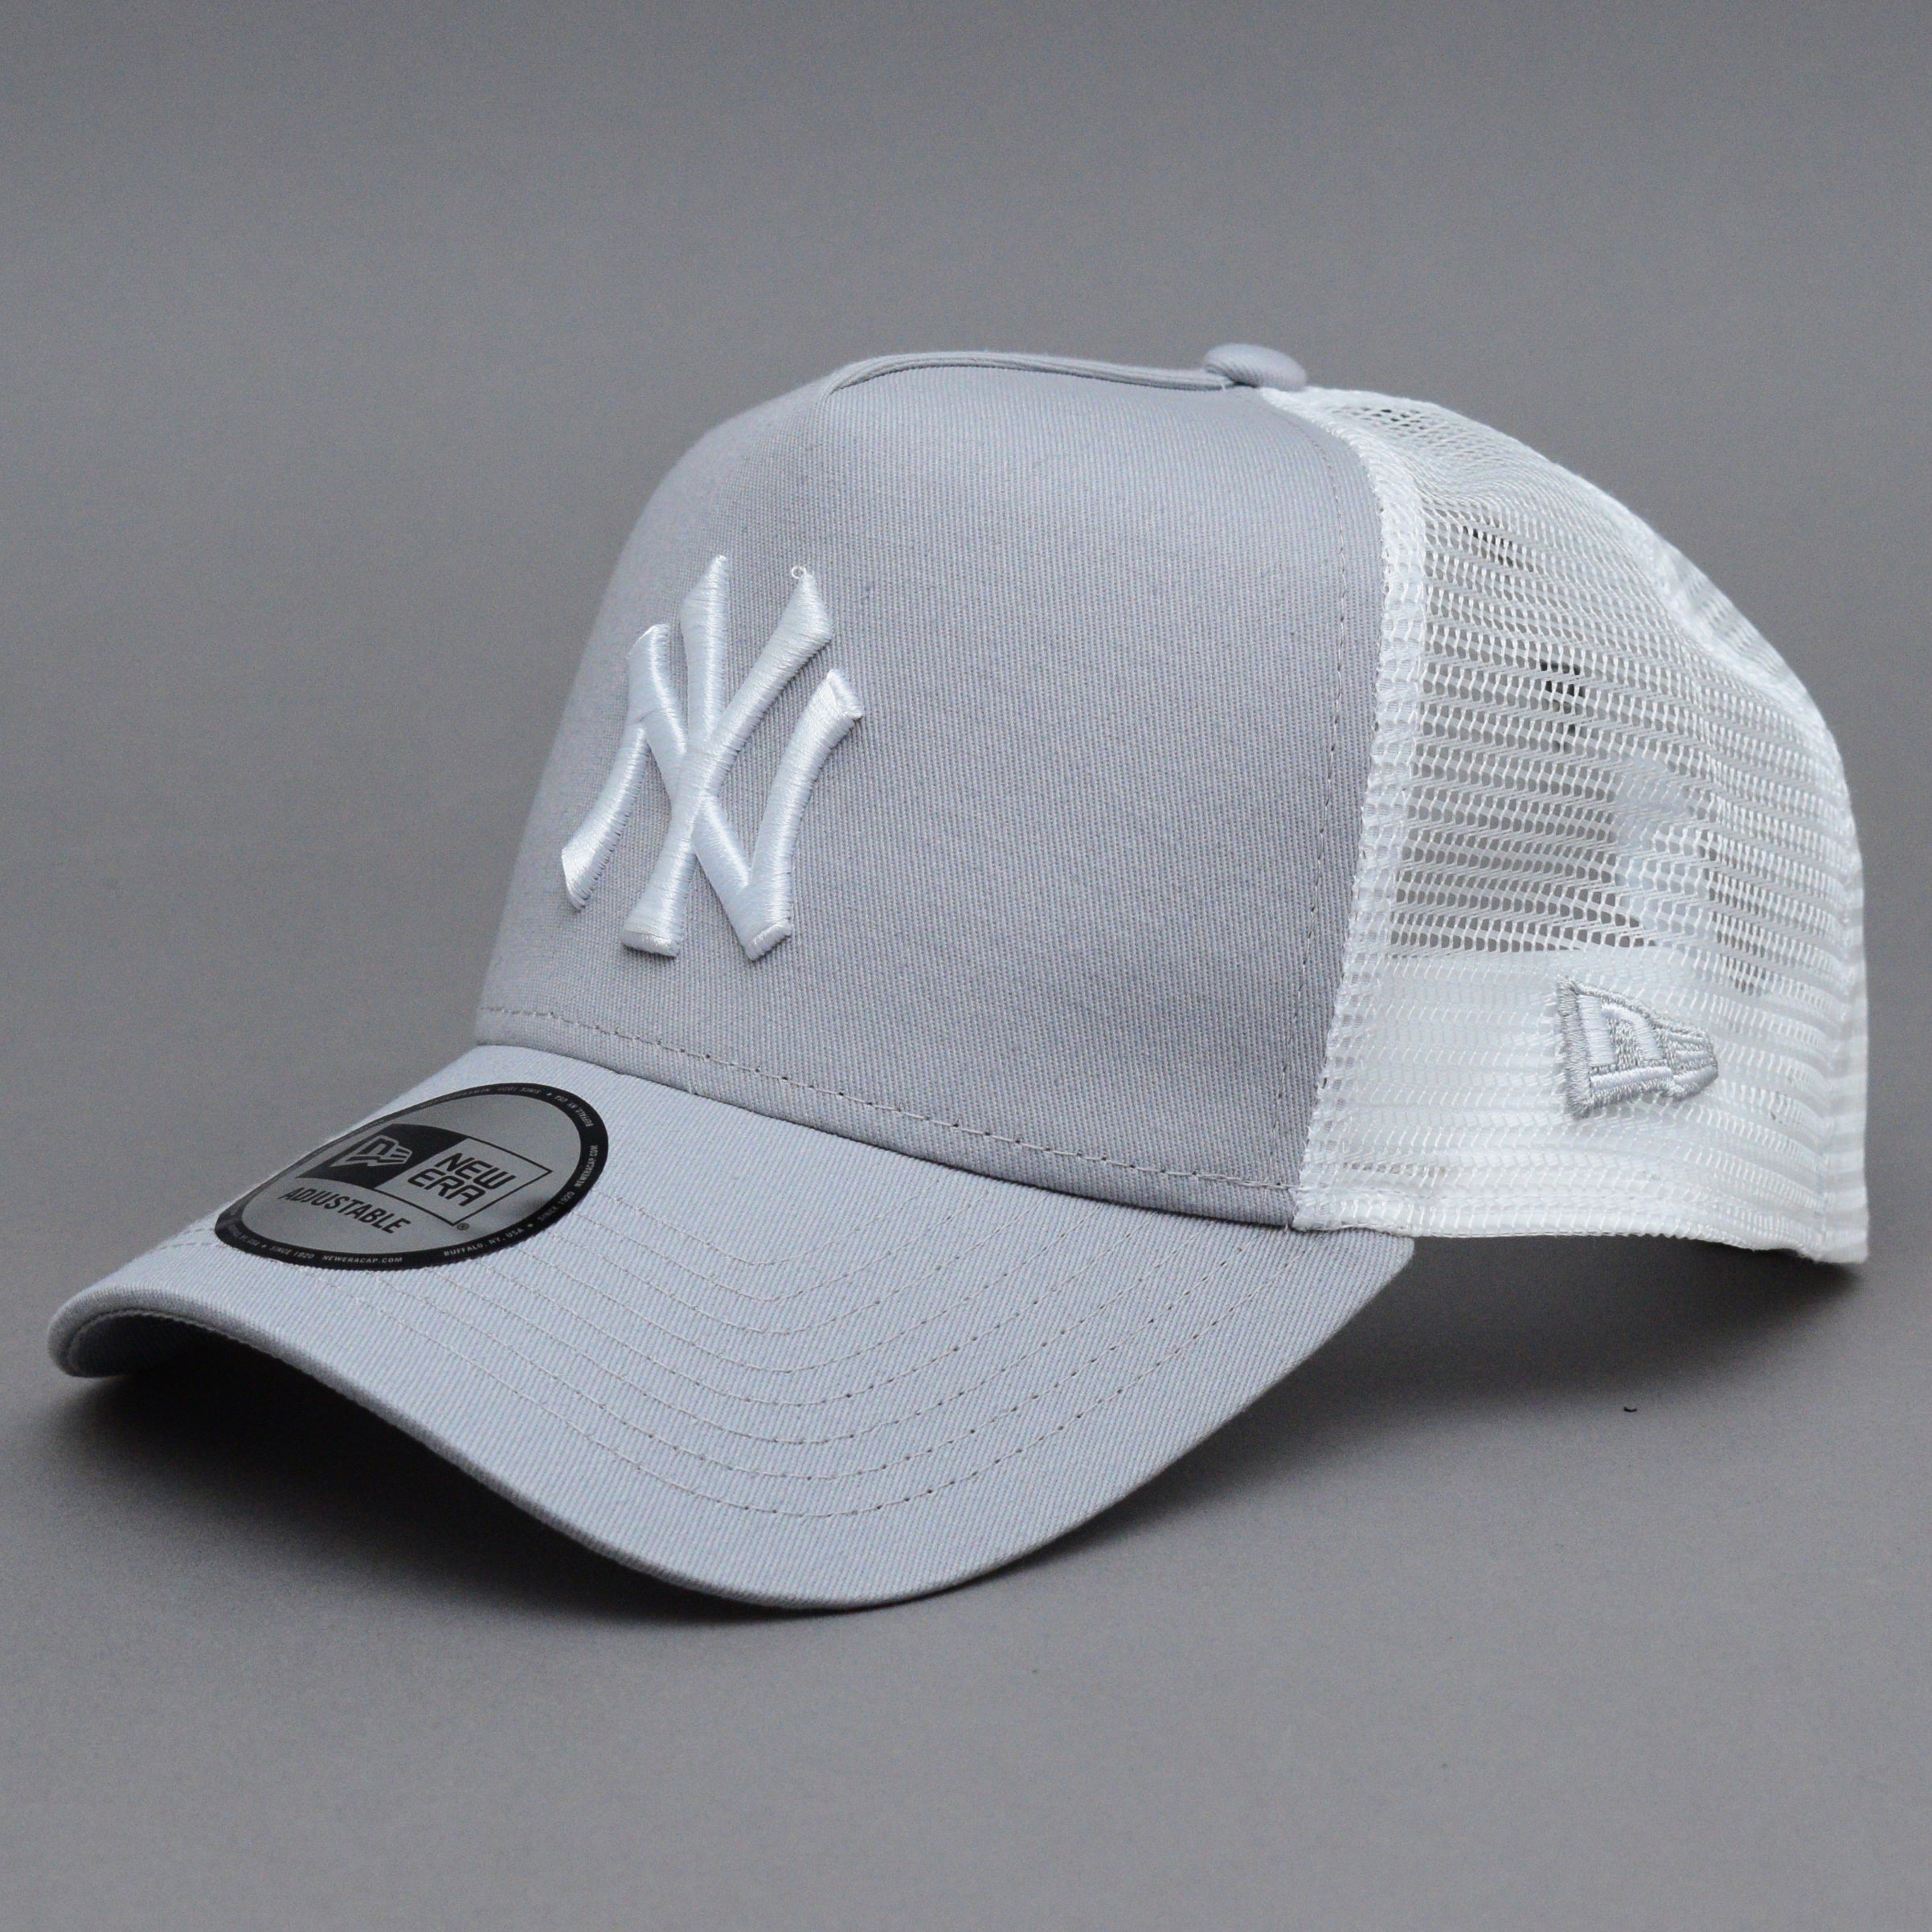 New Era - NY Yankees Clean 2 - Trucker/Snapback - Grey/White